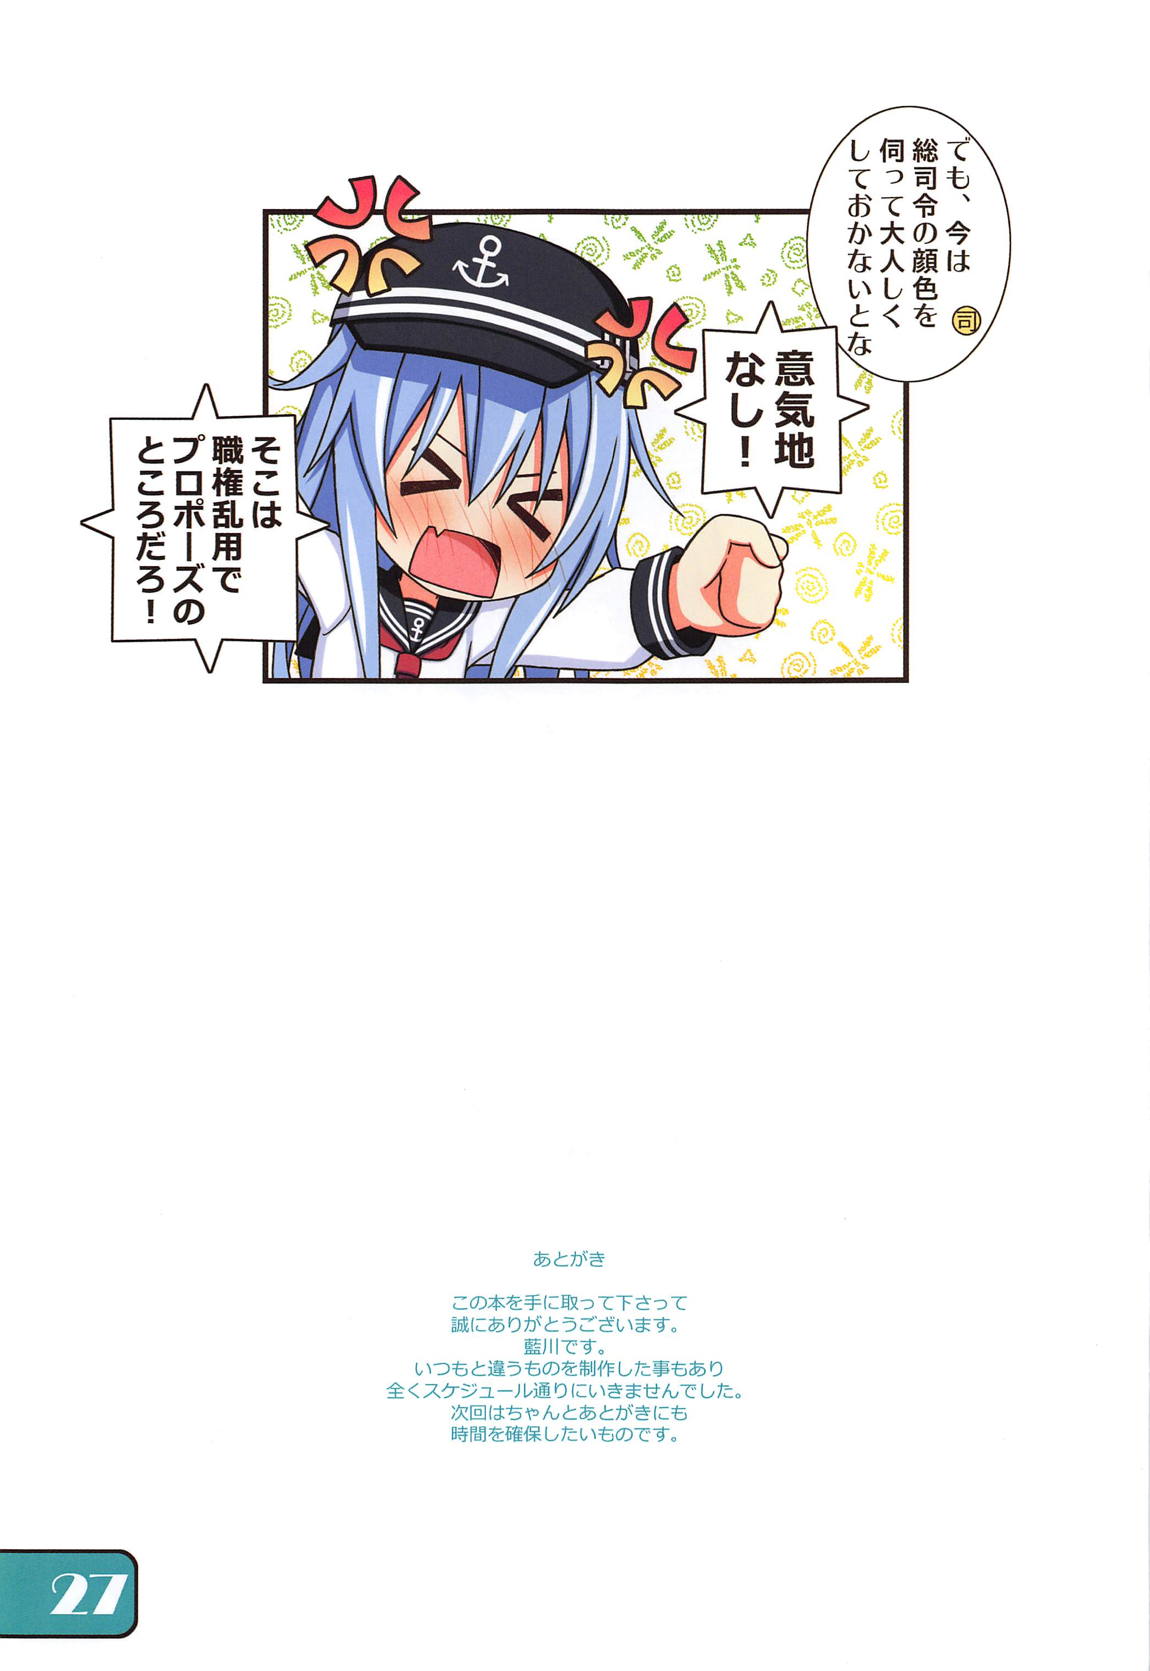 (COMIC1☆15) [Awareness (藍川とうま)] IRIS35 響に職権を乱用するだけの本 (艦隊これくしょん -艦これ-)